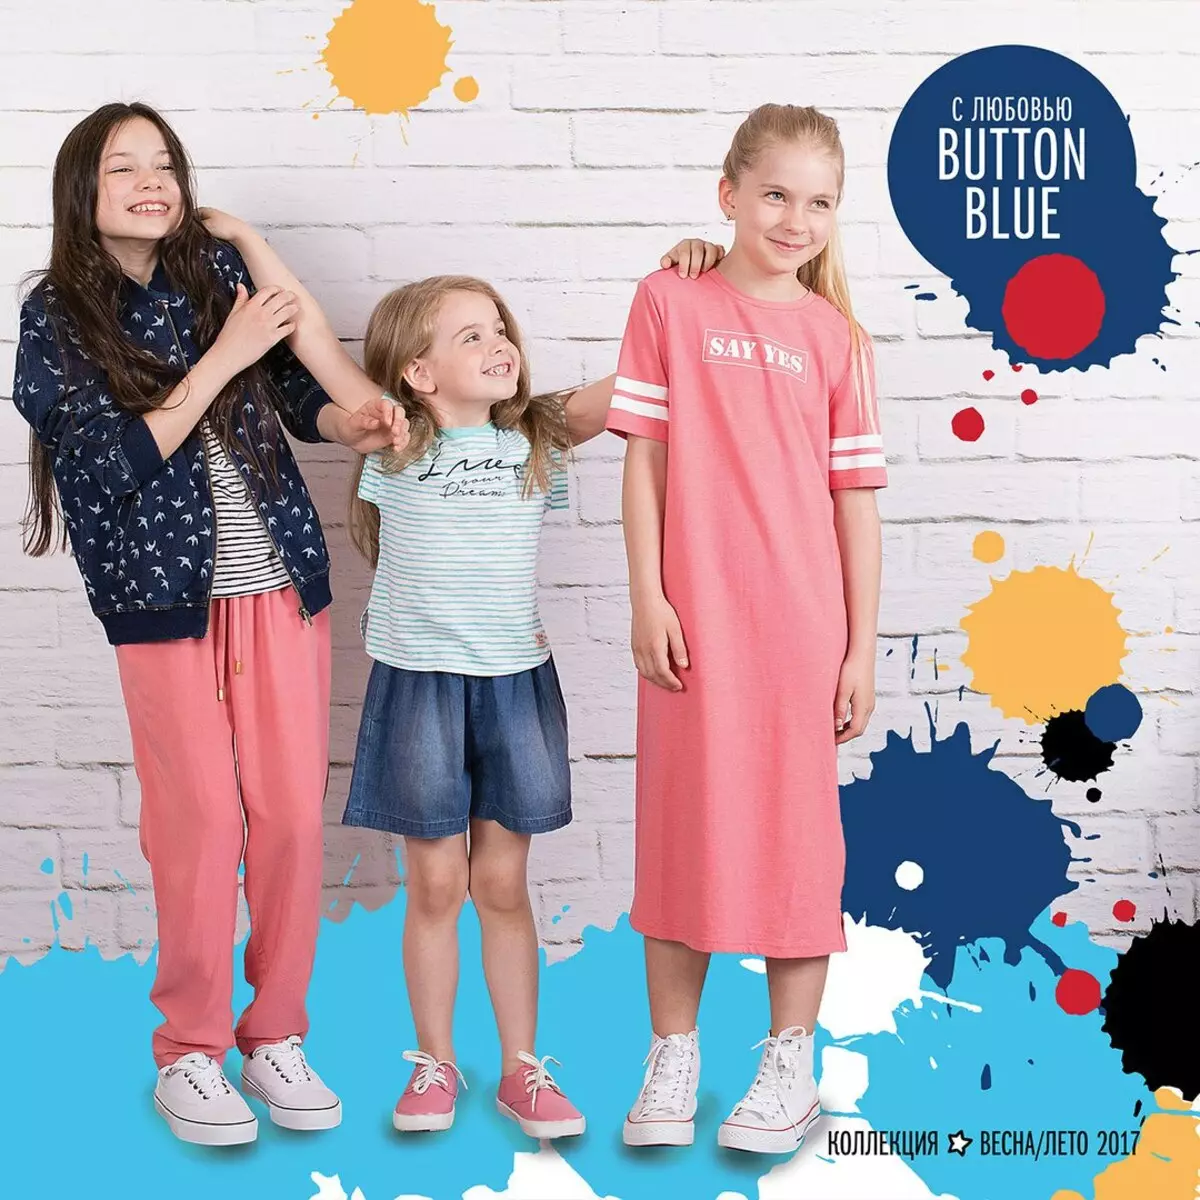 Tlačítko Blue (120 fotografií): Dětské lehké oblečení, větrovky a hračky, školní uniforma pro dívky a plavky, recenze o kvalitě 3805_14